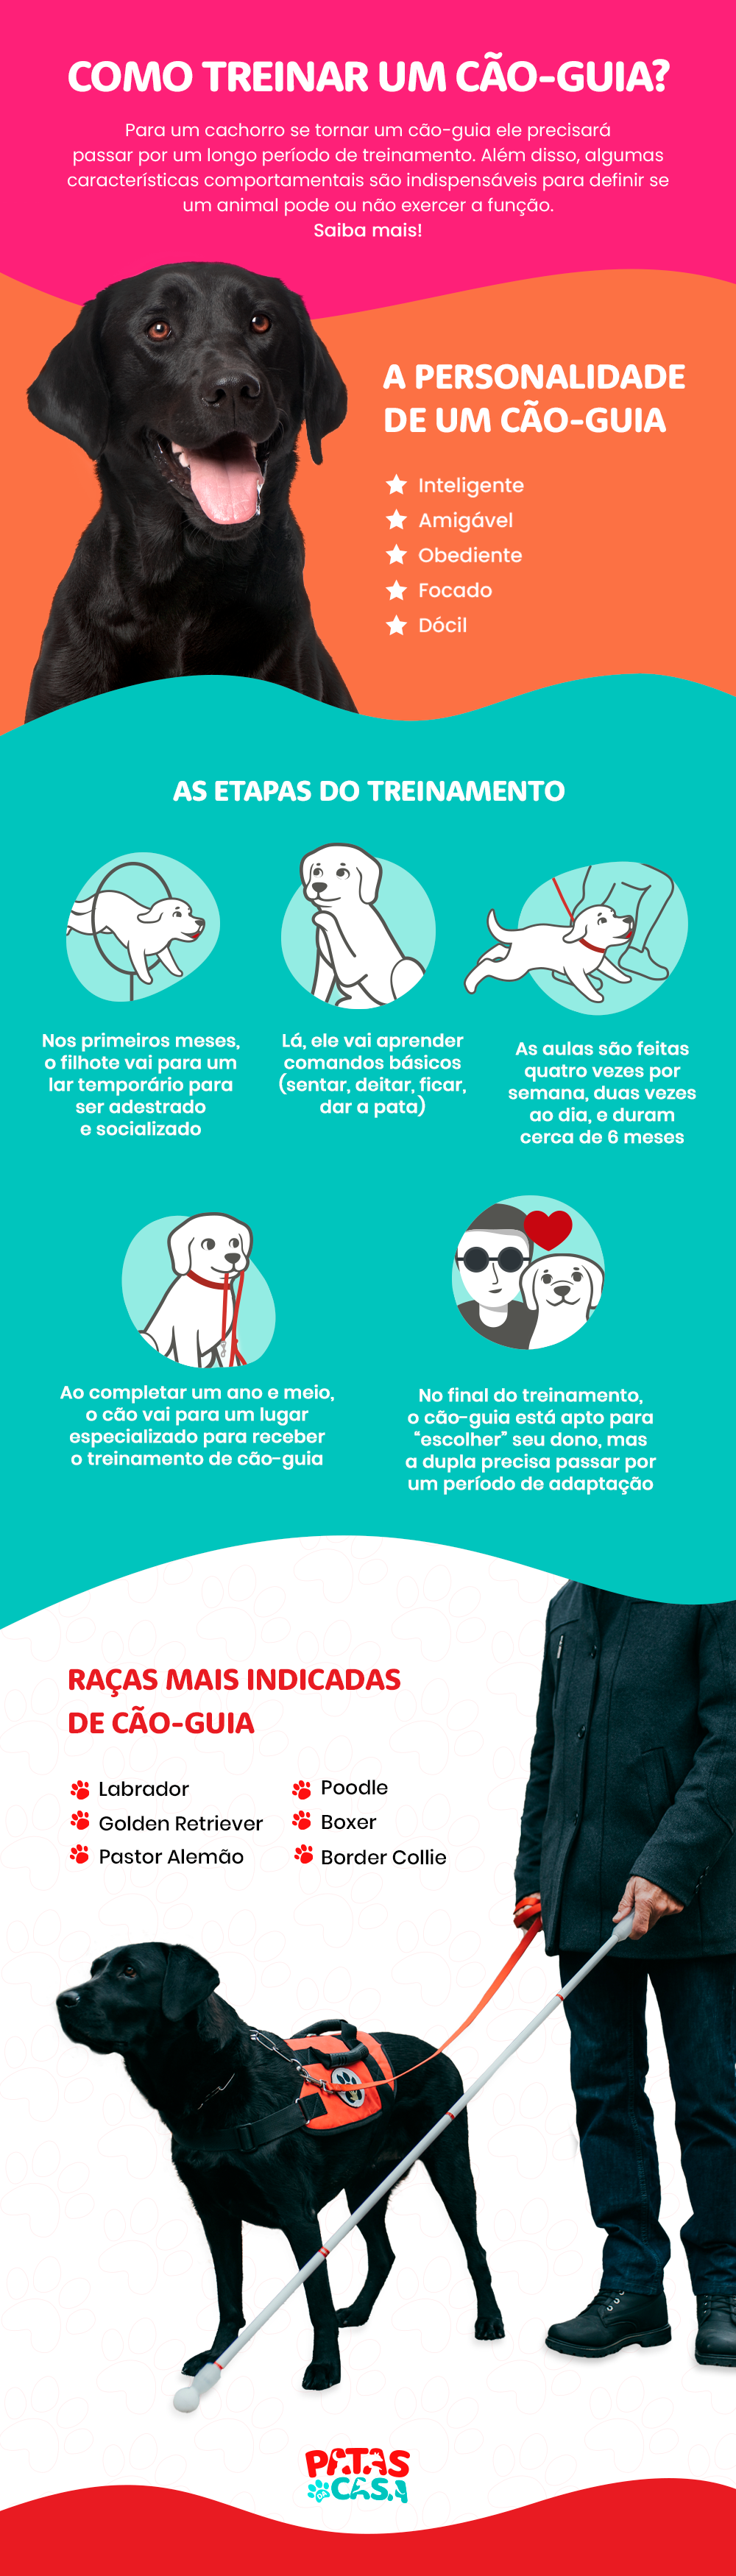 Infográfico mostrando como treinar um cão-guia